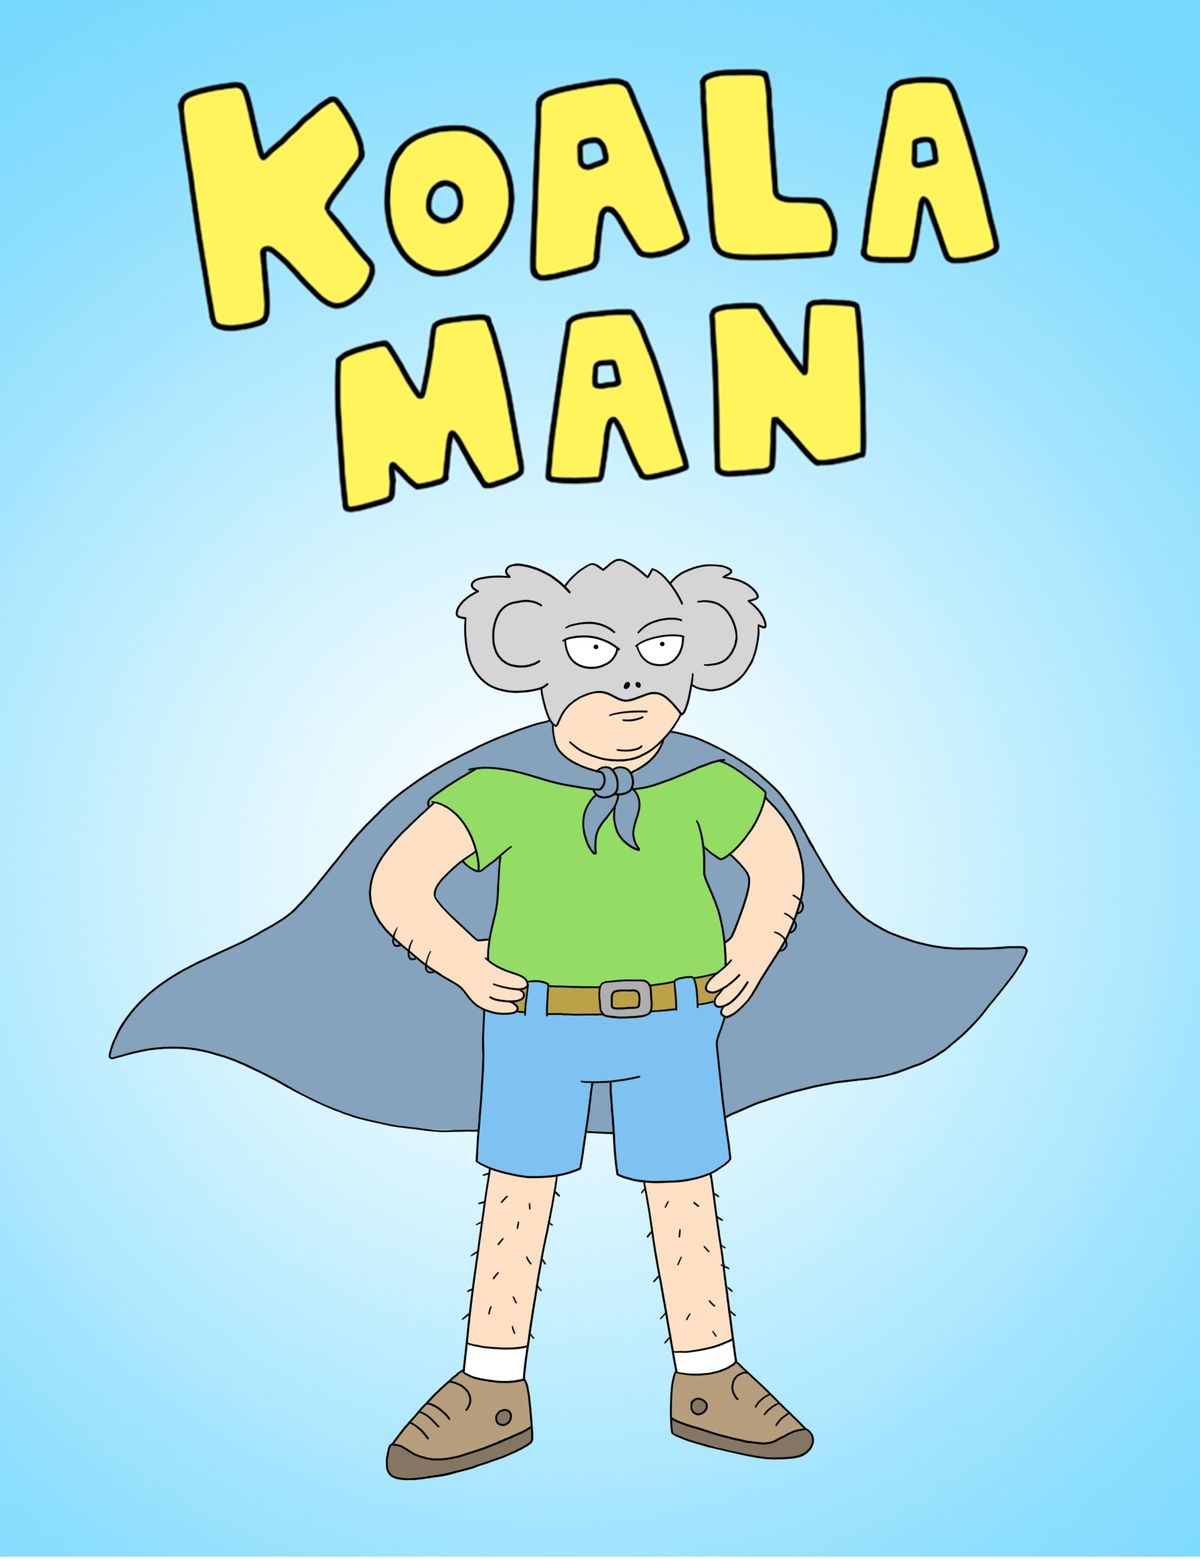 Koala Man: Hulu napove animirano serijo avtorja Rick & Morty